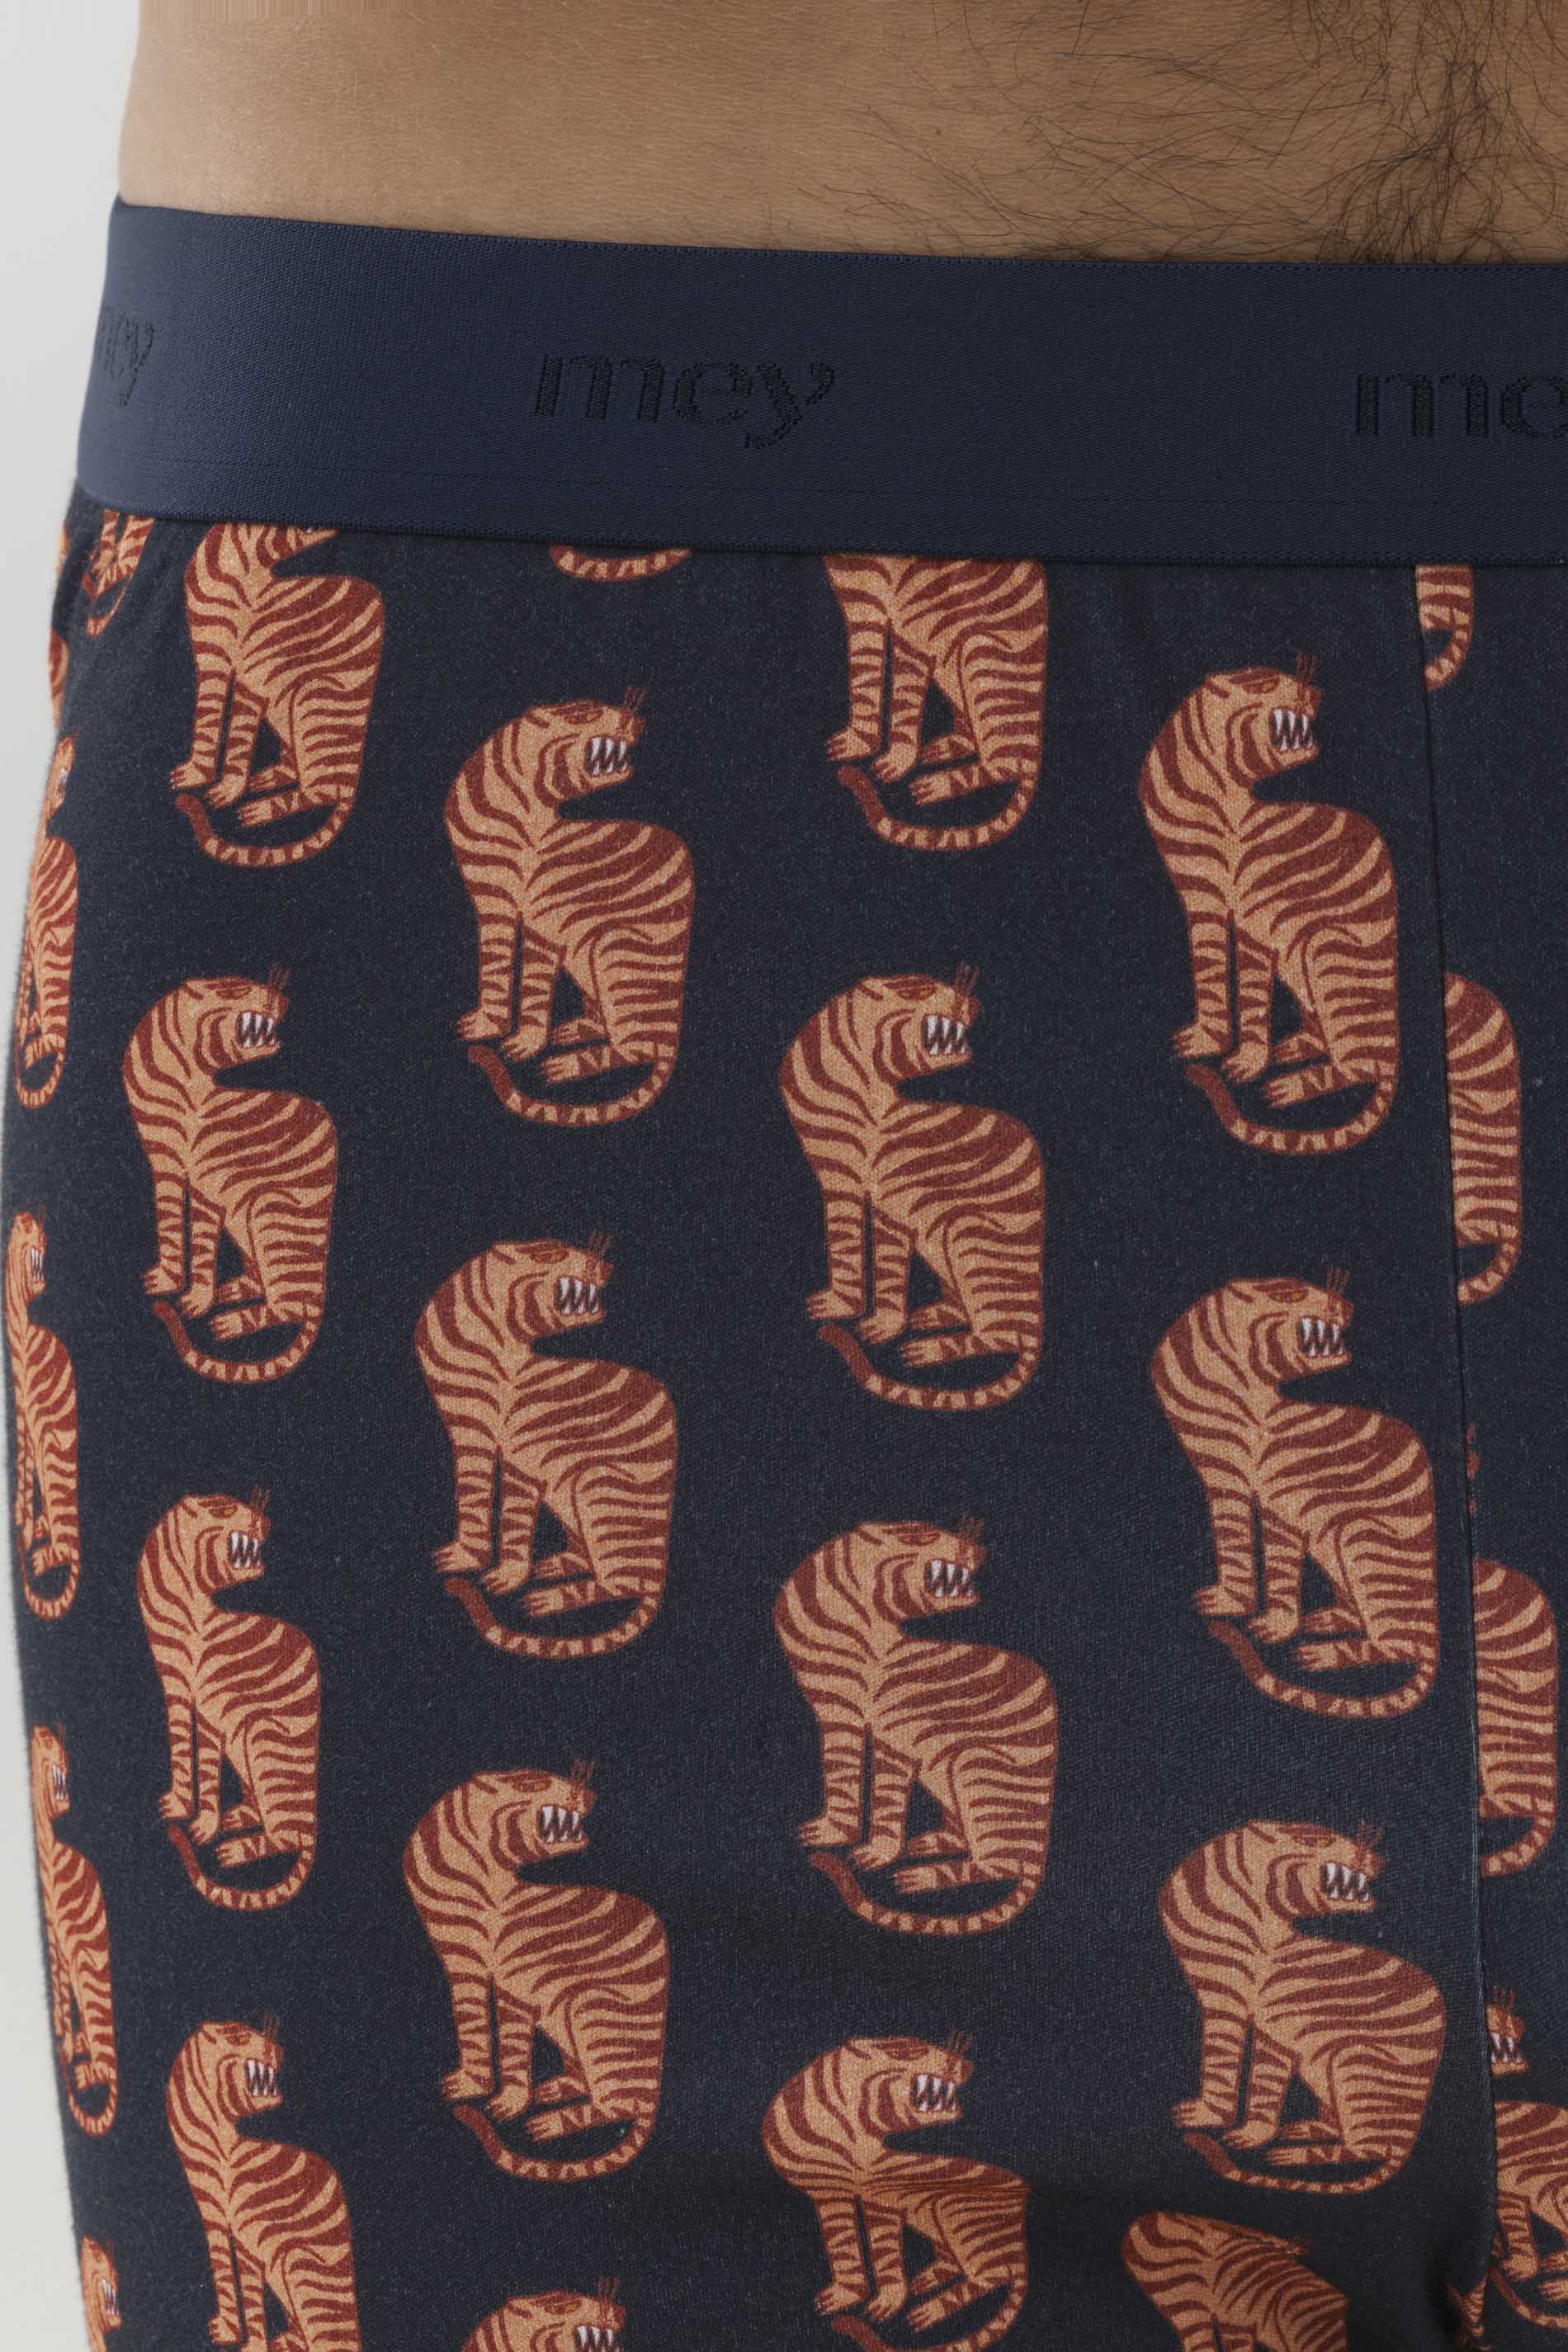 Schlafanzug Serie RE:THINK Tiger Detailansicht 02 | mey®